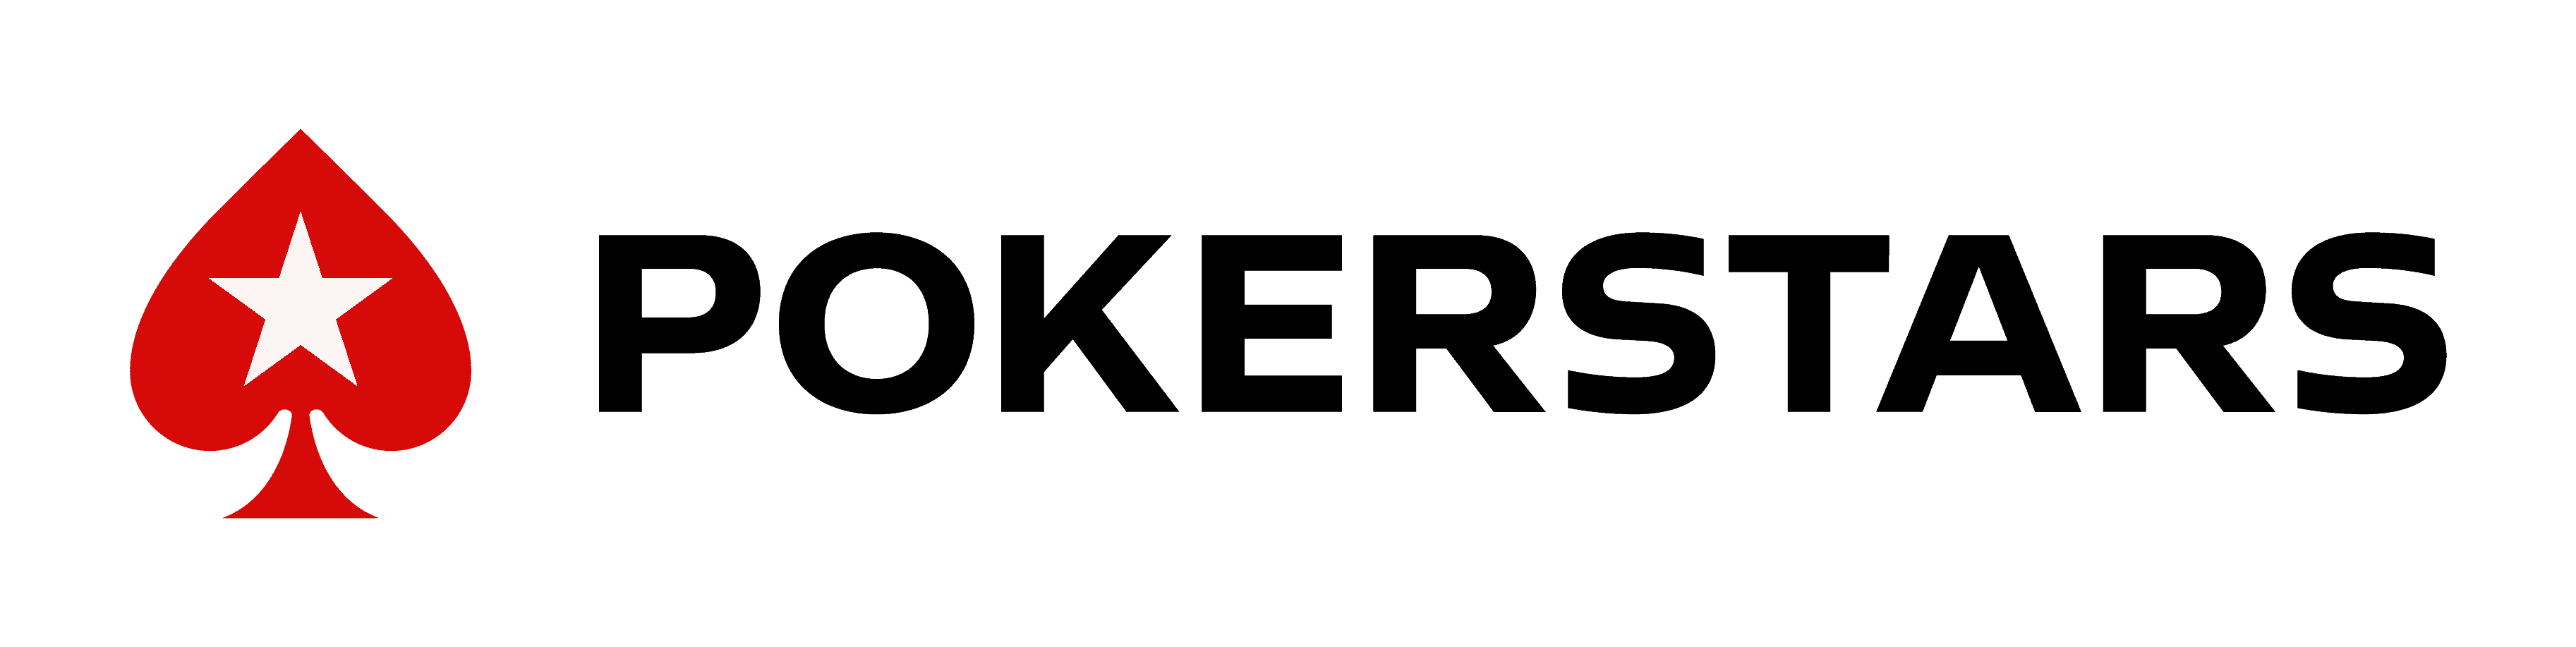 logo pokerstars piccolo